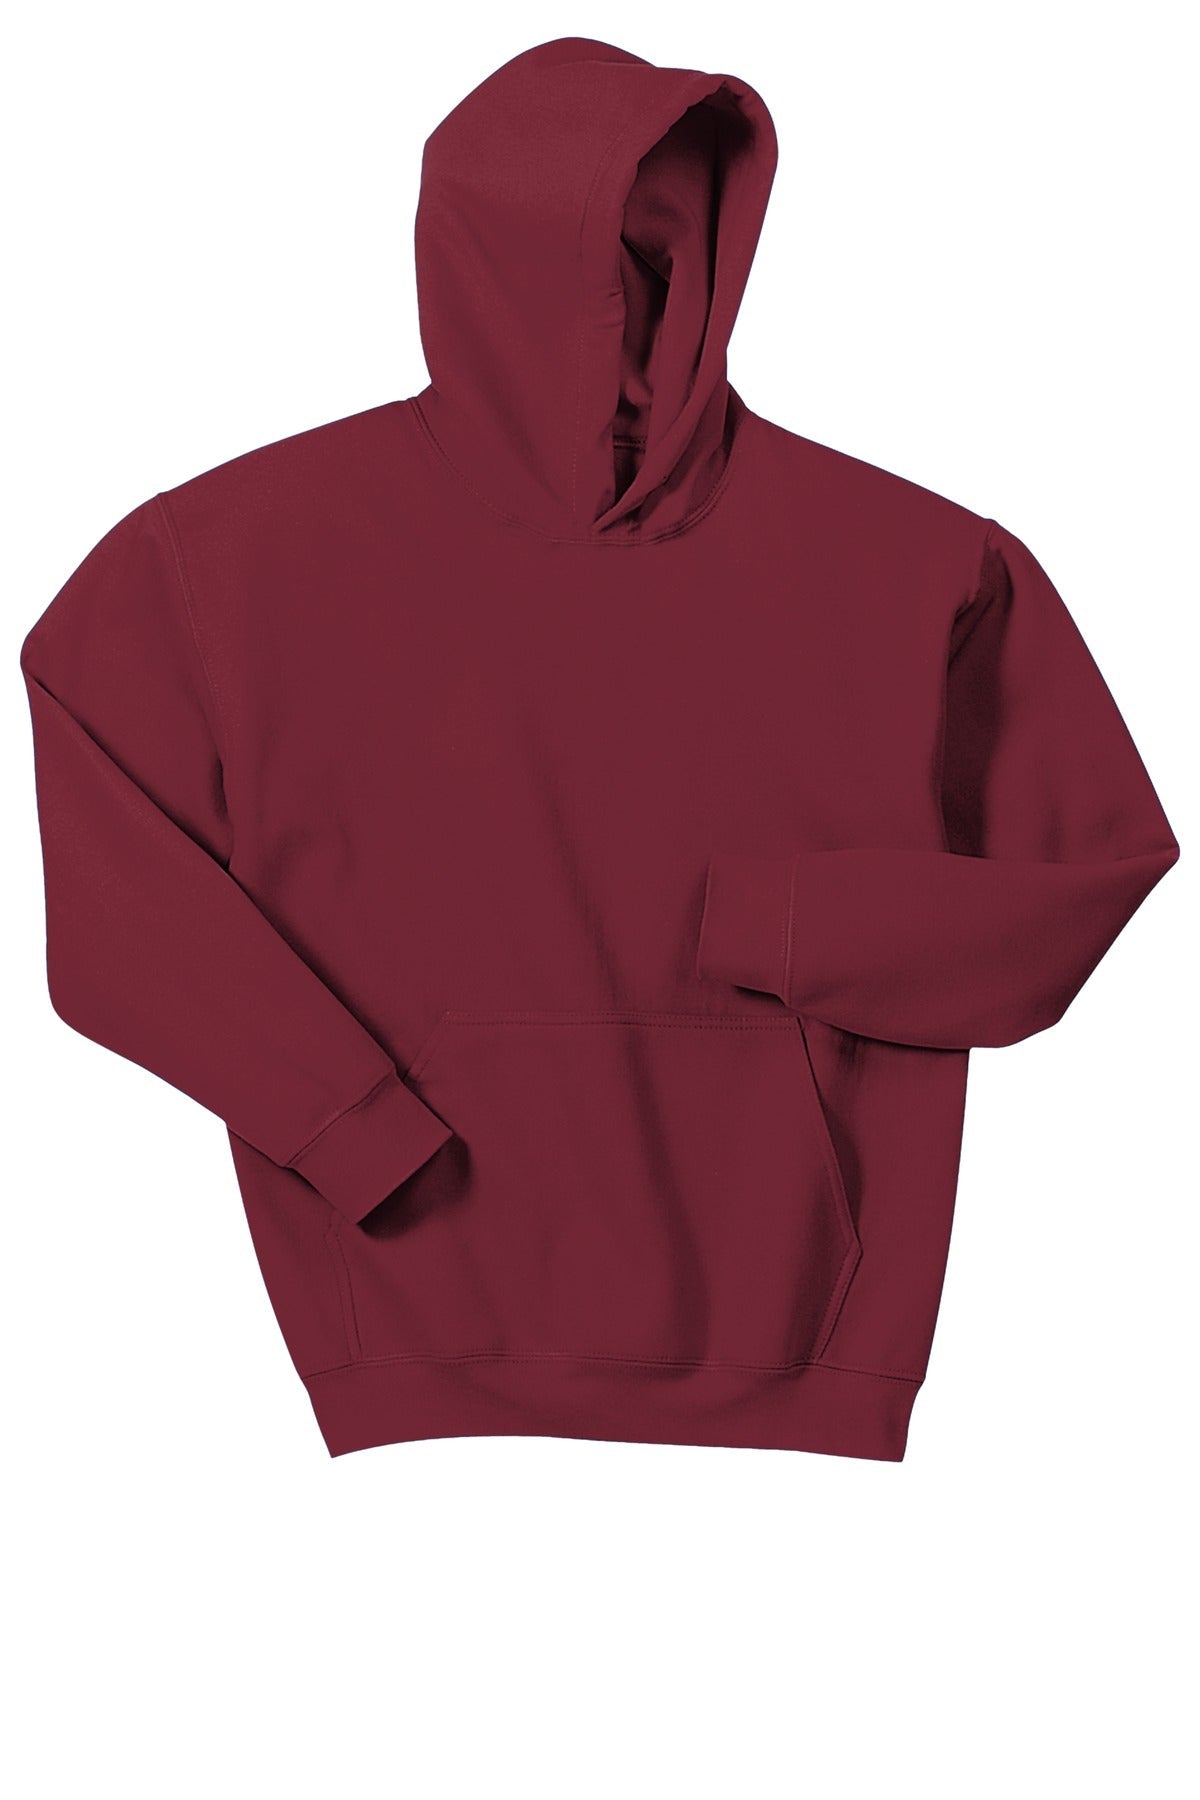 Gildan® - Youth Heavy Blend™ Hooded Sweatshirt. 18500B [Cardinal Red] - DFW Impression